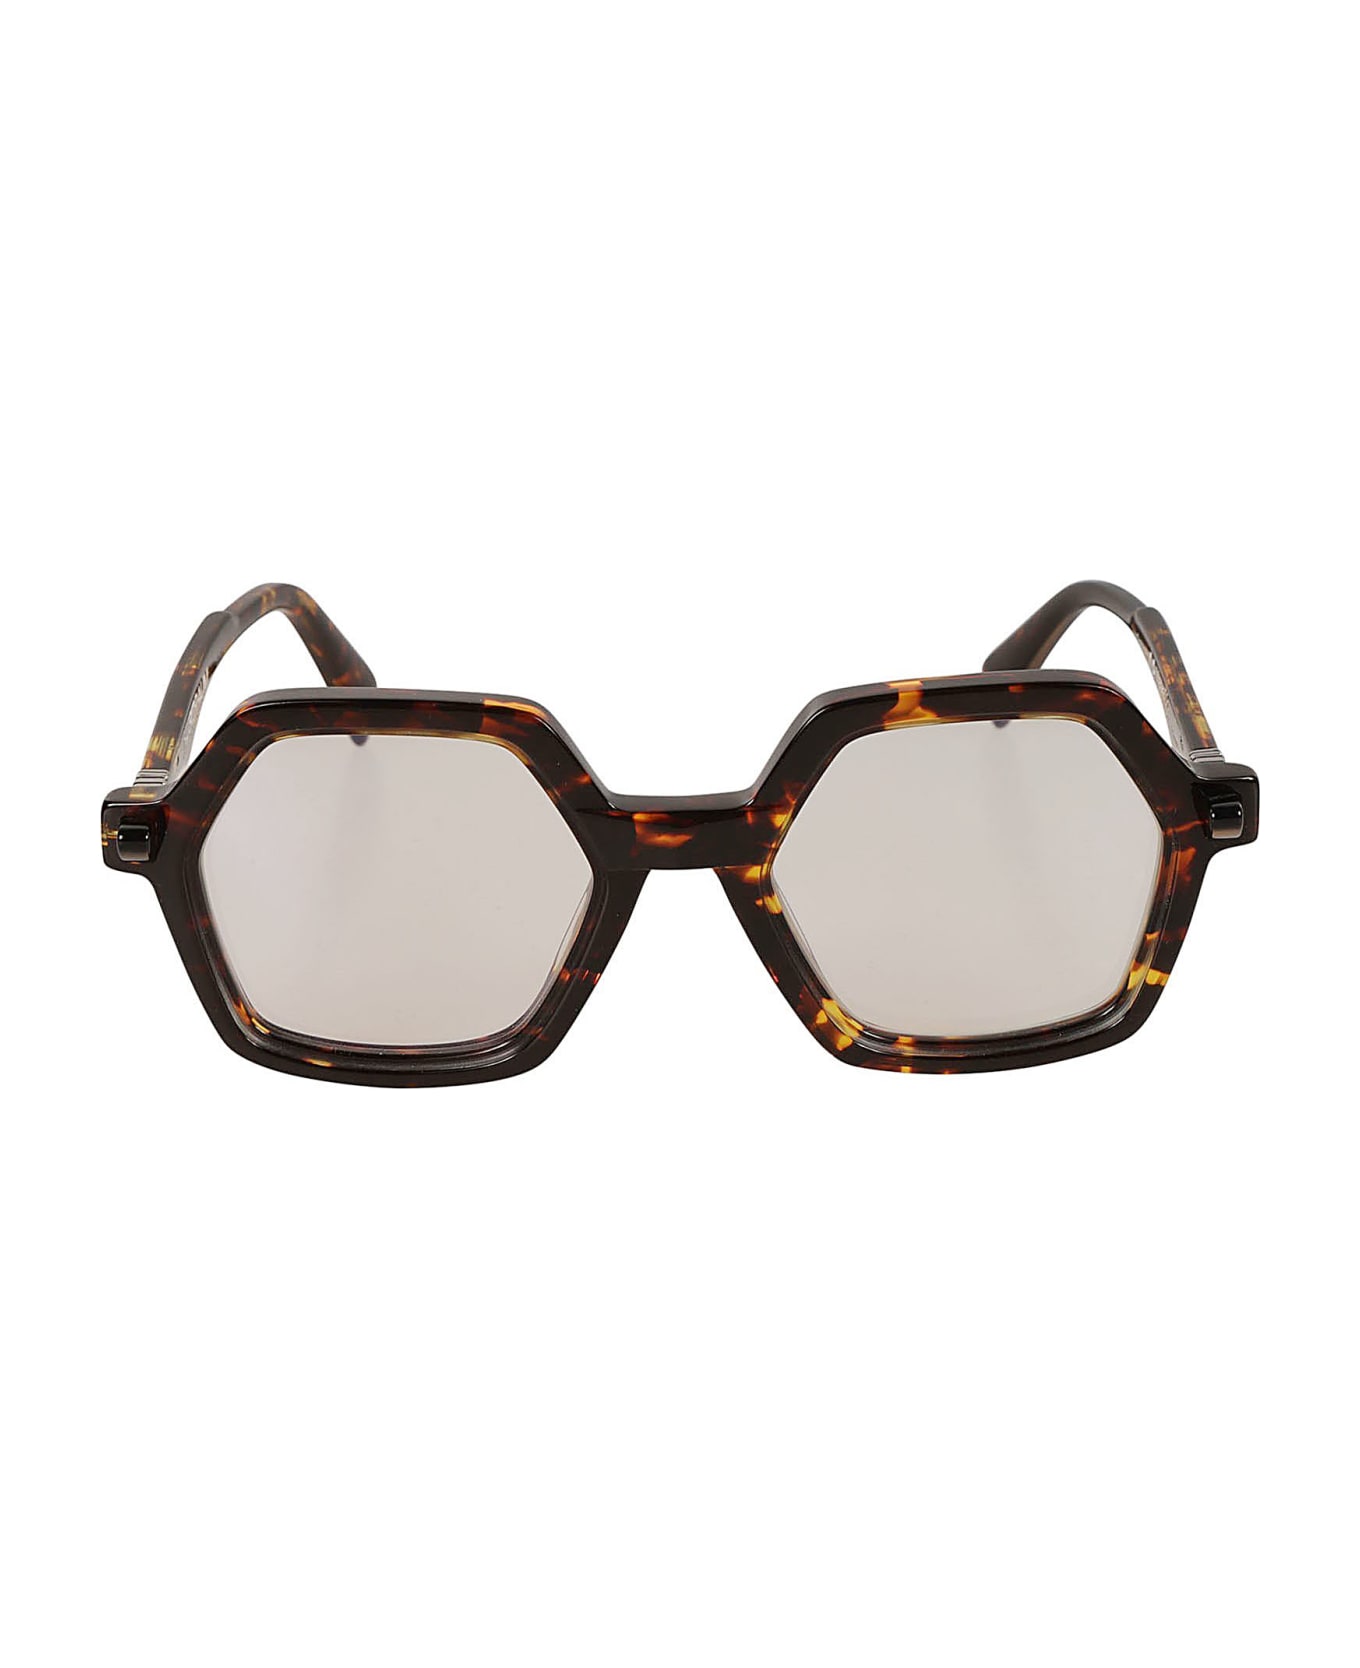 Kuboraum Q8 Glasses Glasses - havana アイウェア